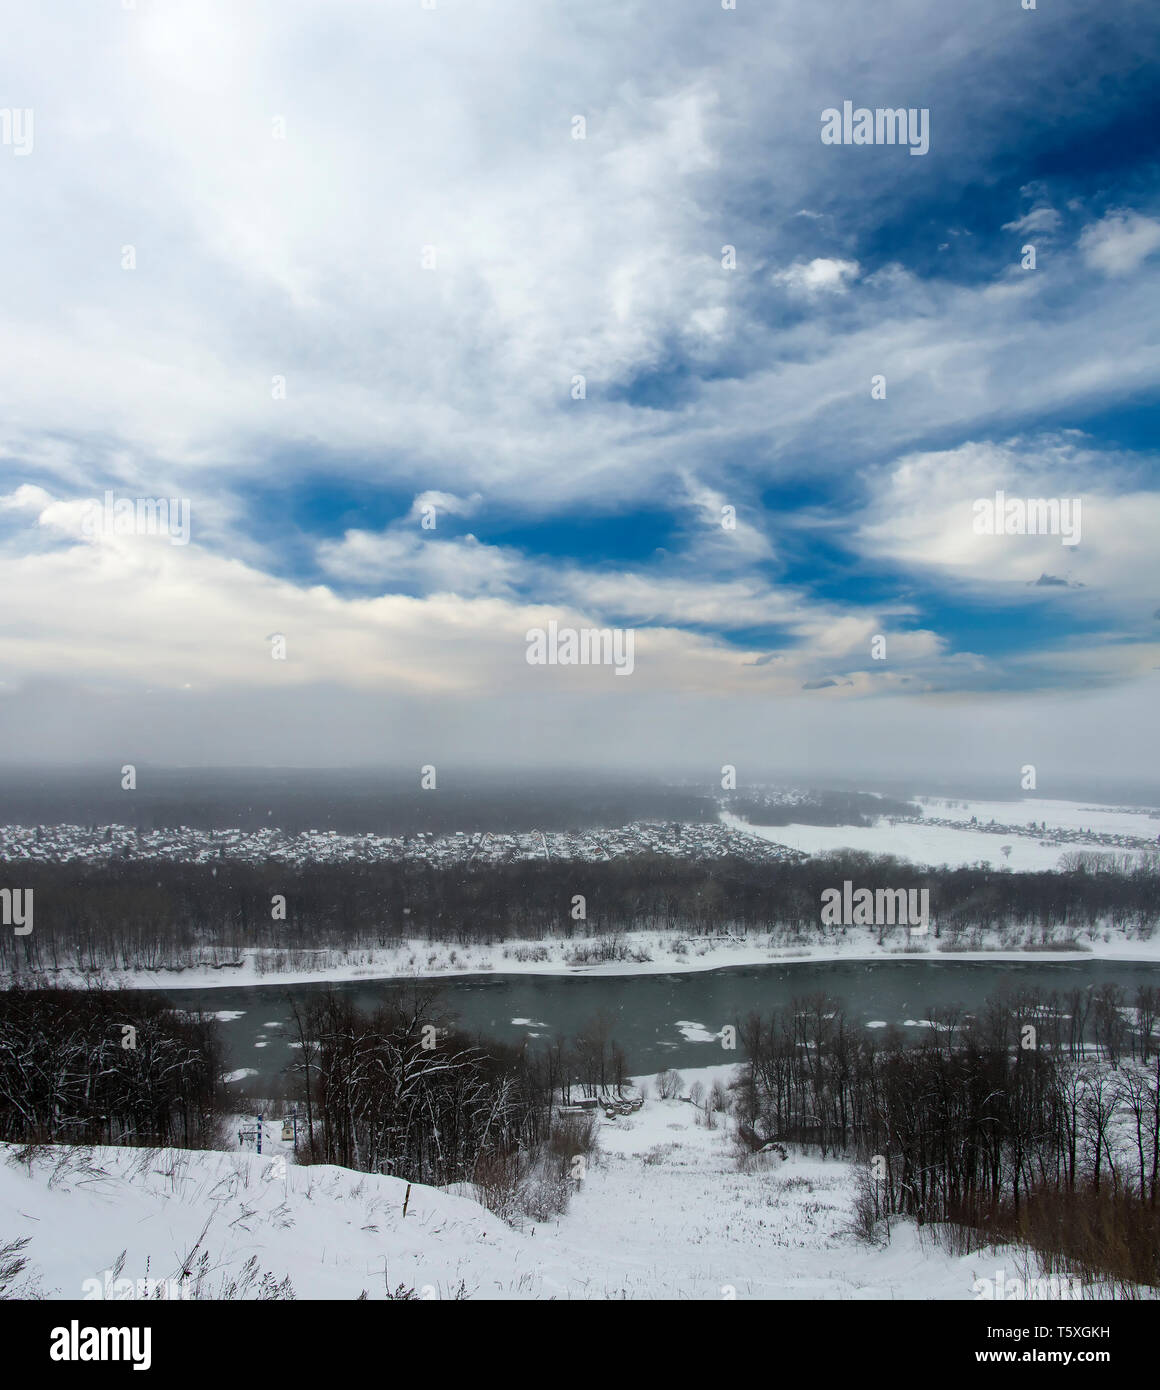 Paesaggio invernale. Grigio boschi innevati e cielo blu con nuvole bianche. Fiume Freddo Foto Stock